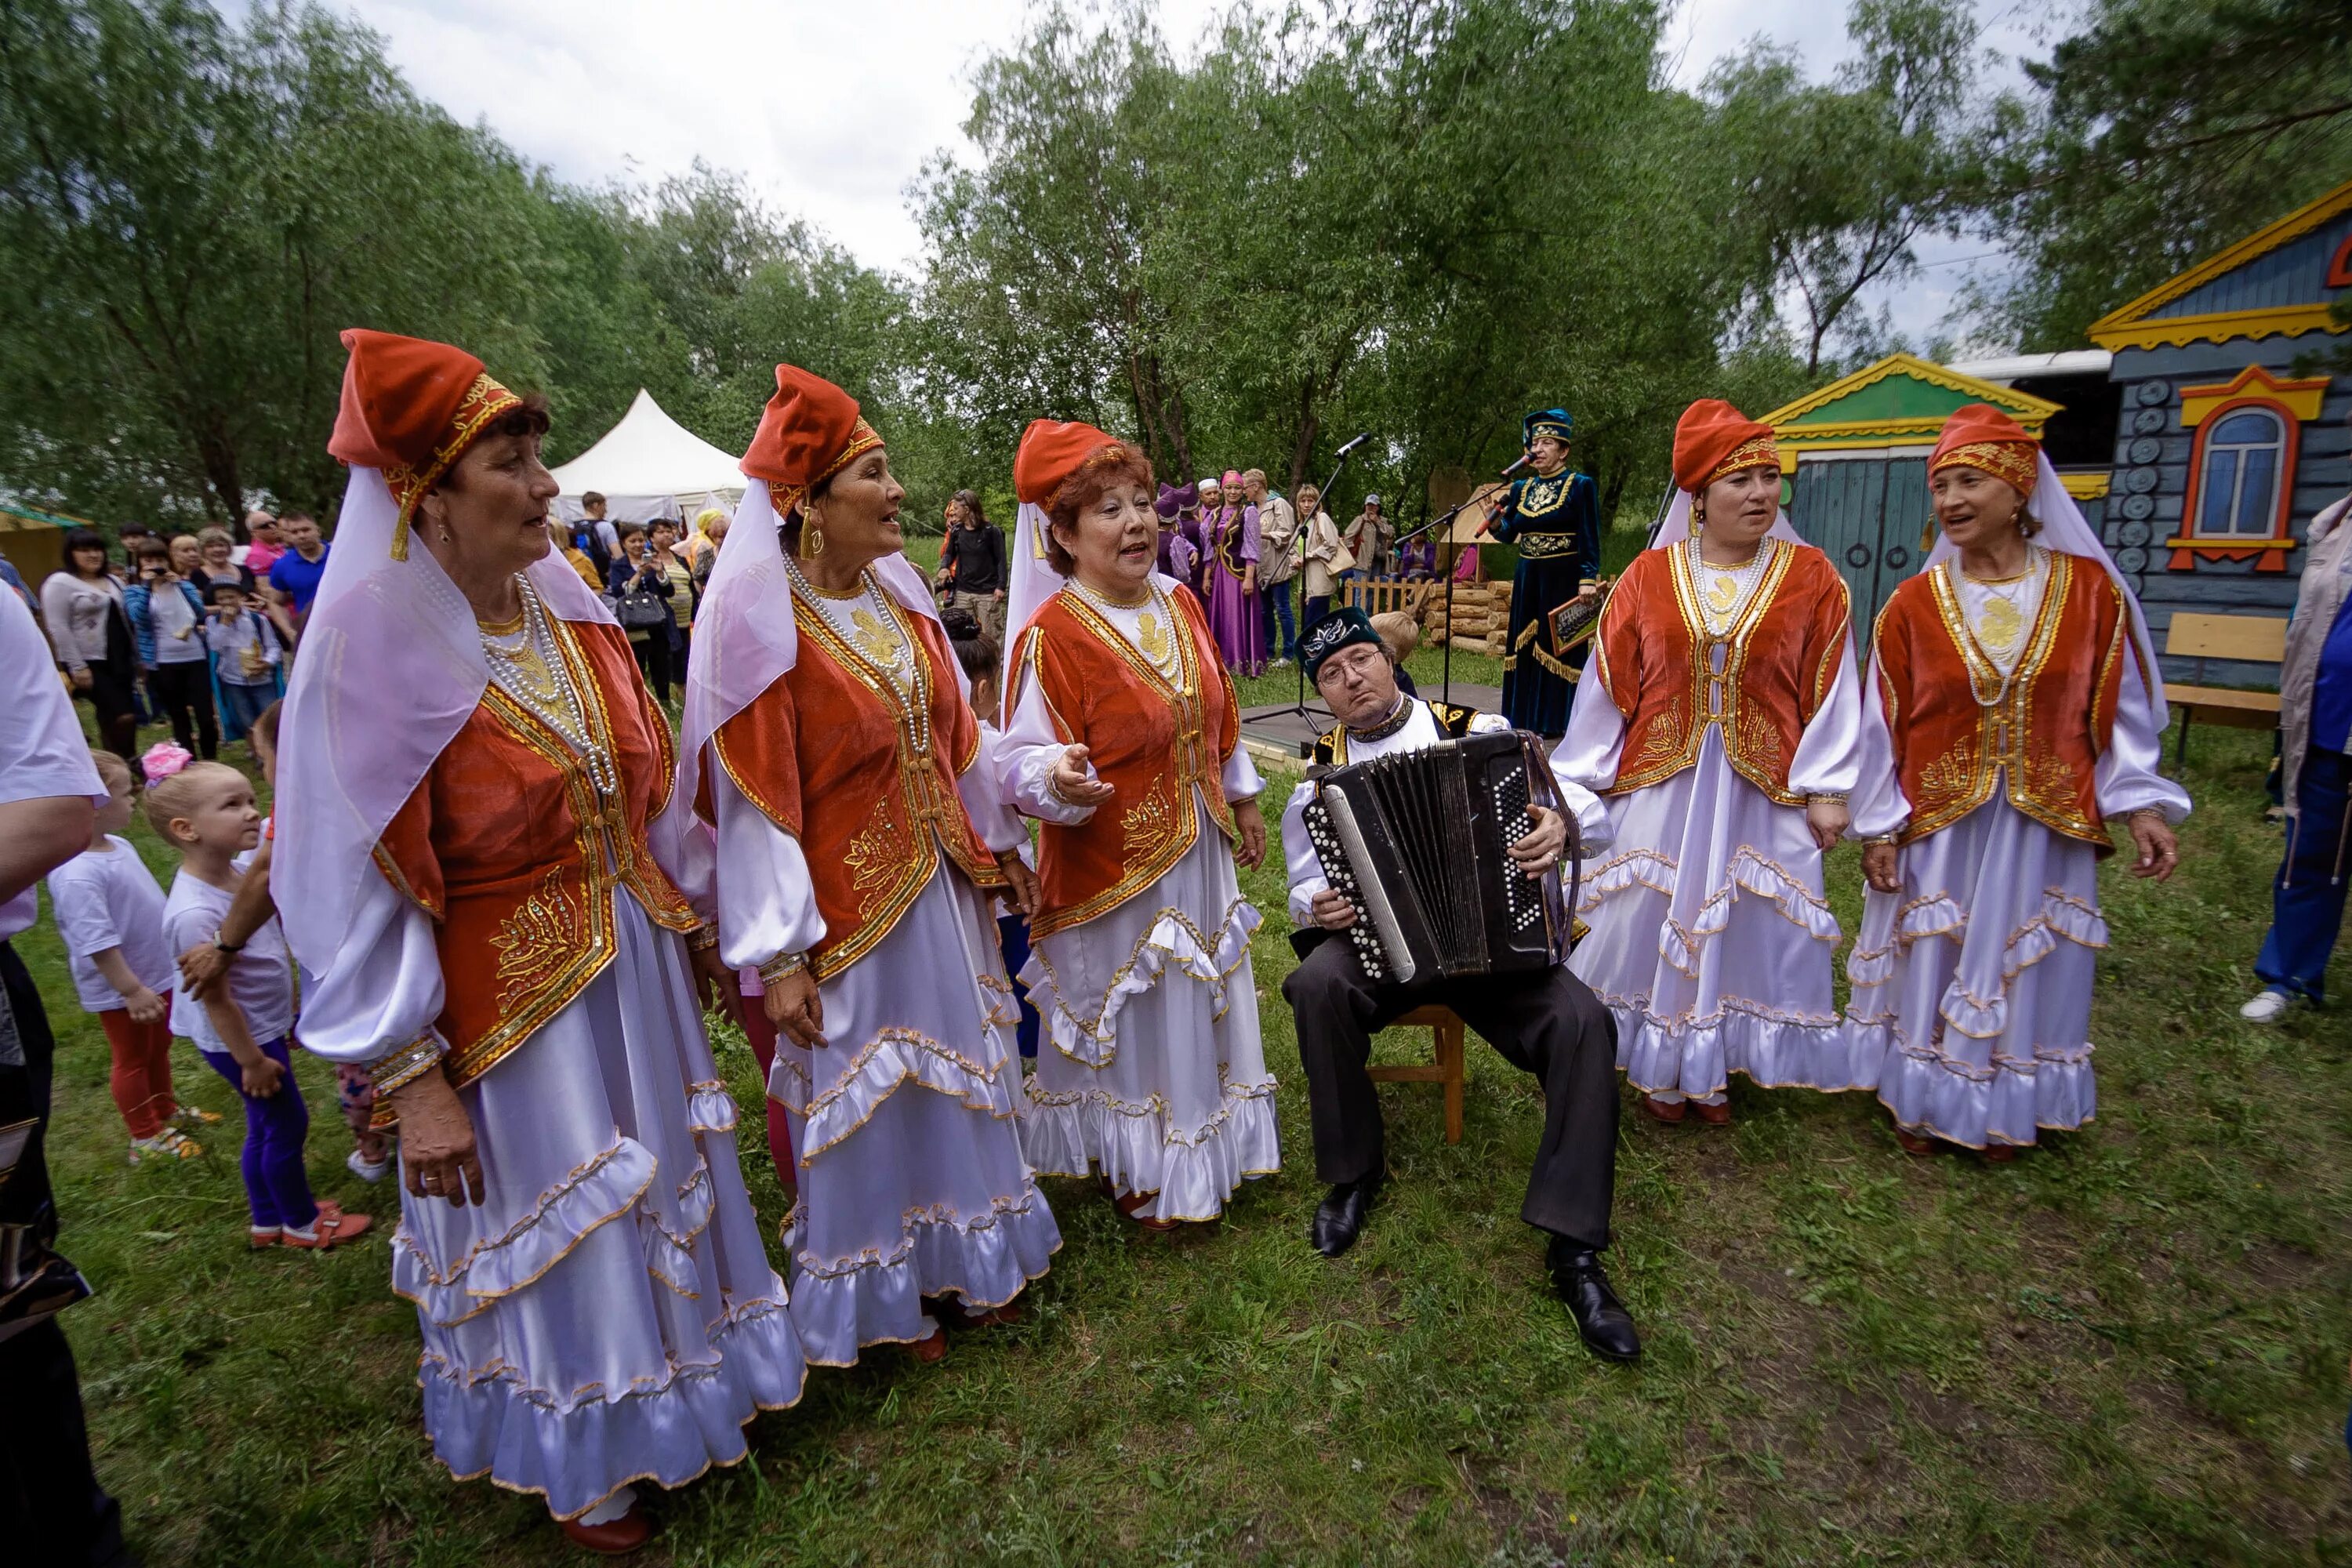 Весенний праздник у татар